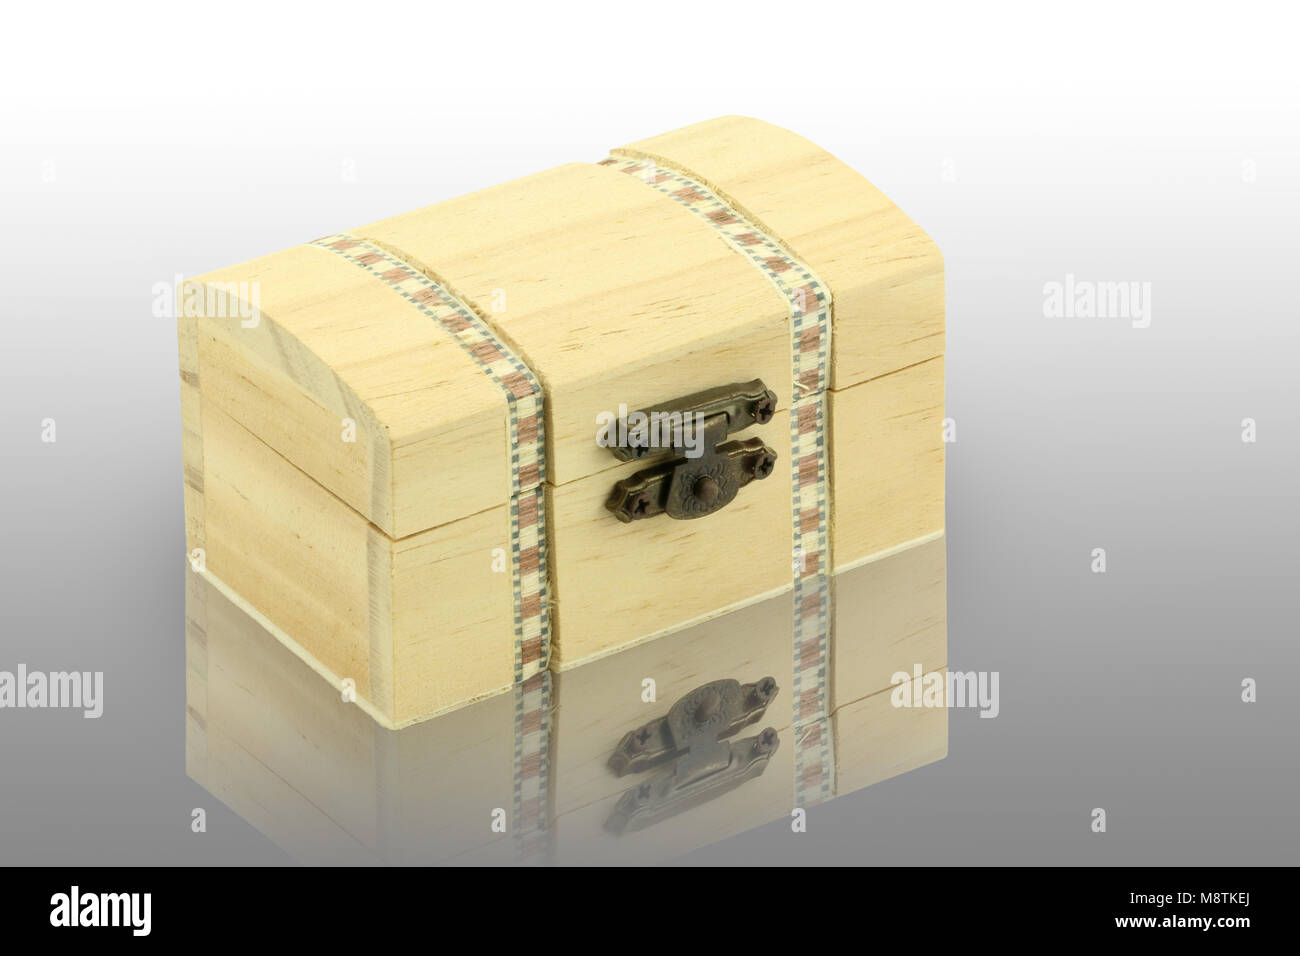 wood box on reflective surface. White background. Stock Photo